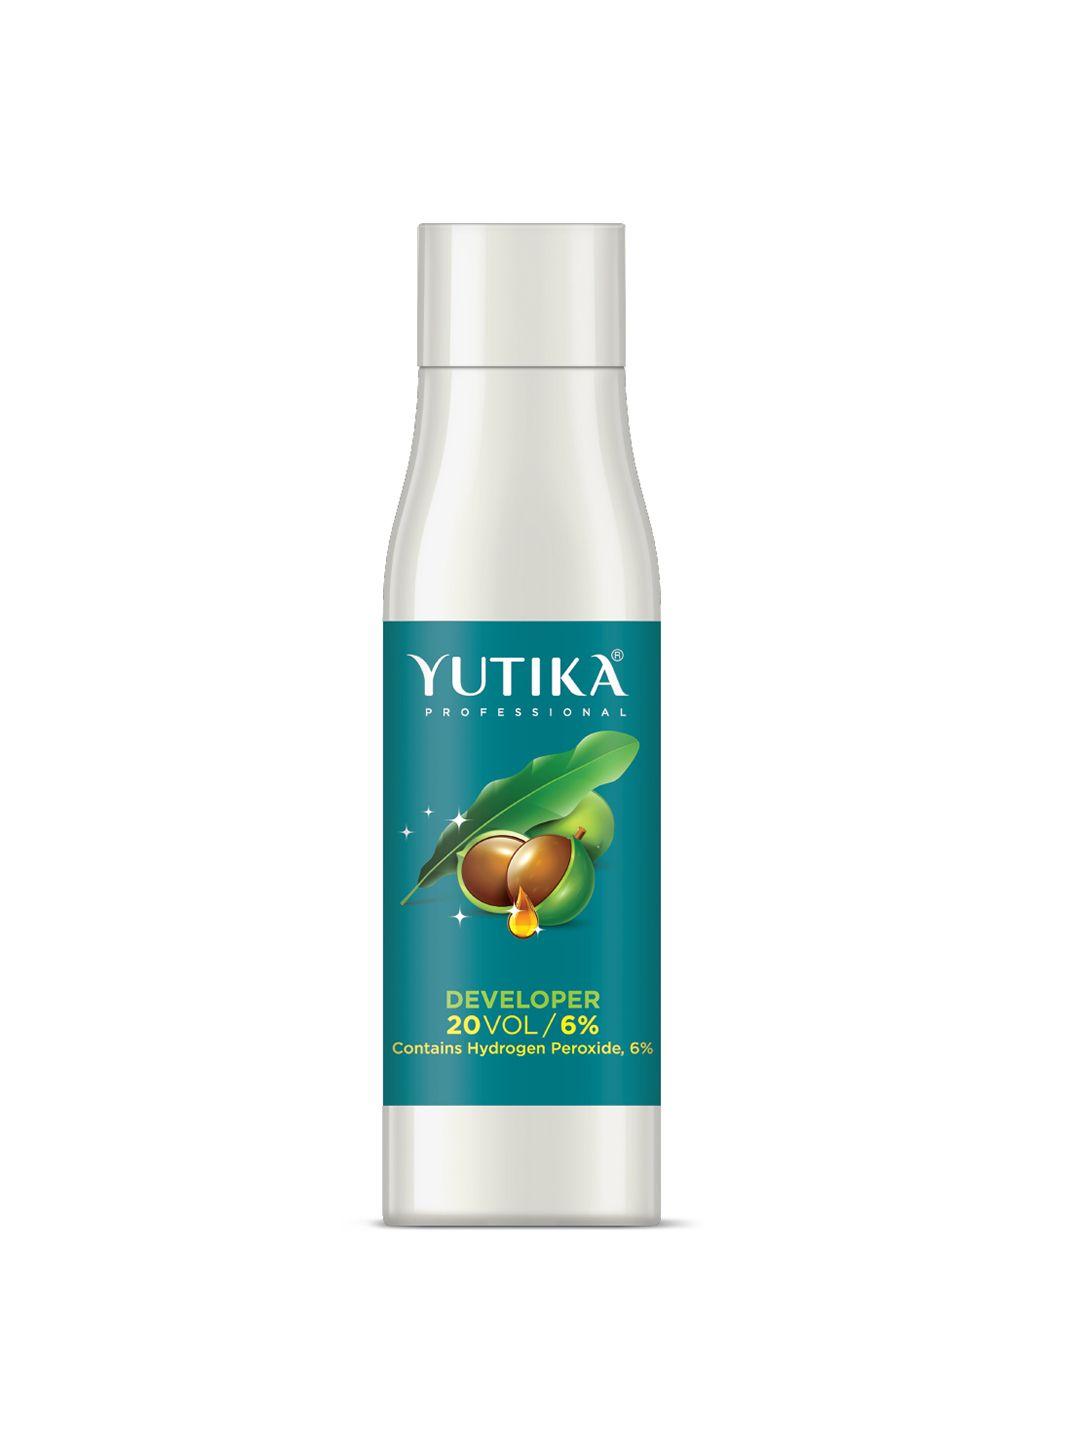 yutika professional hair developer 20 volume 6%, 500ml